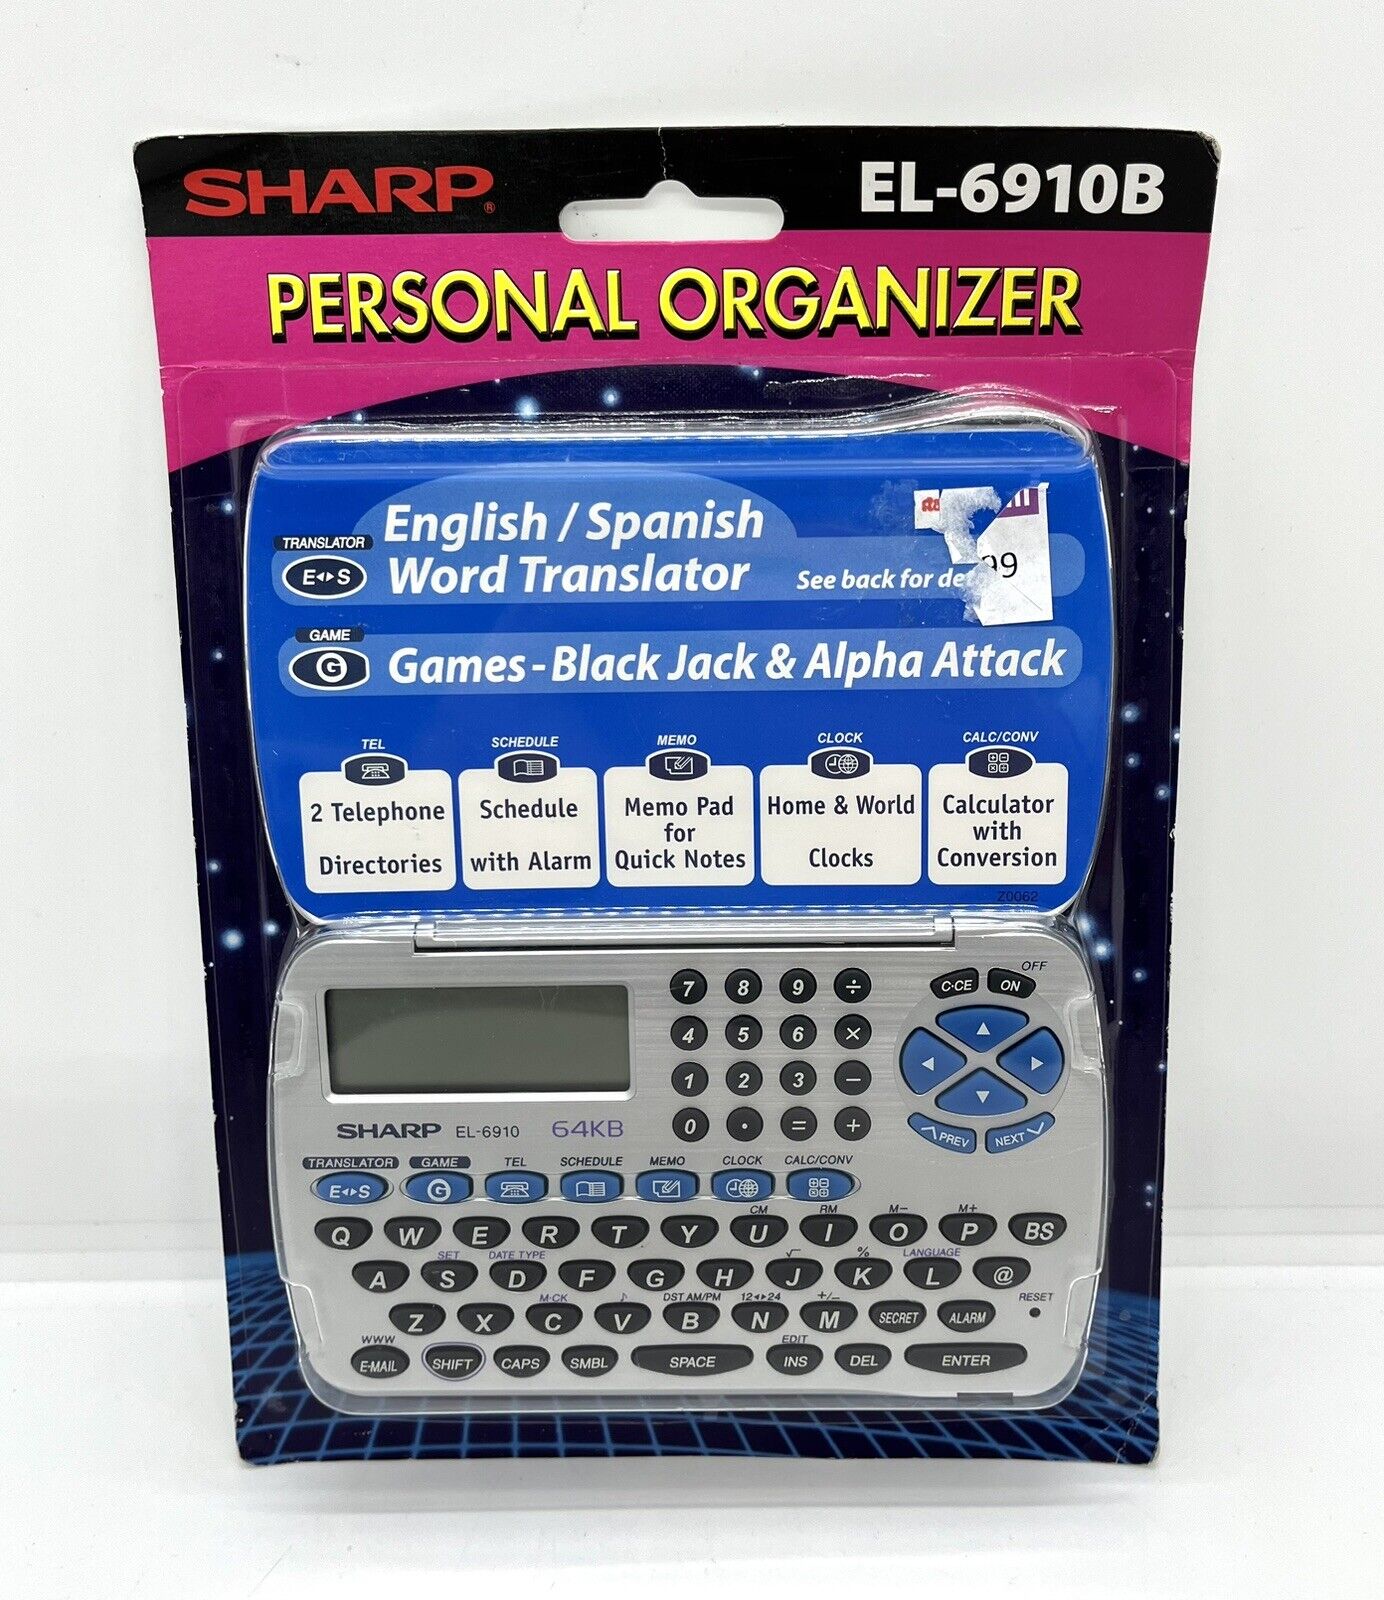 NIB Sharp Electronic Personal Organizer EL-6910B 64 KB Spanish Word Translator Sharp el-6910b